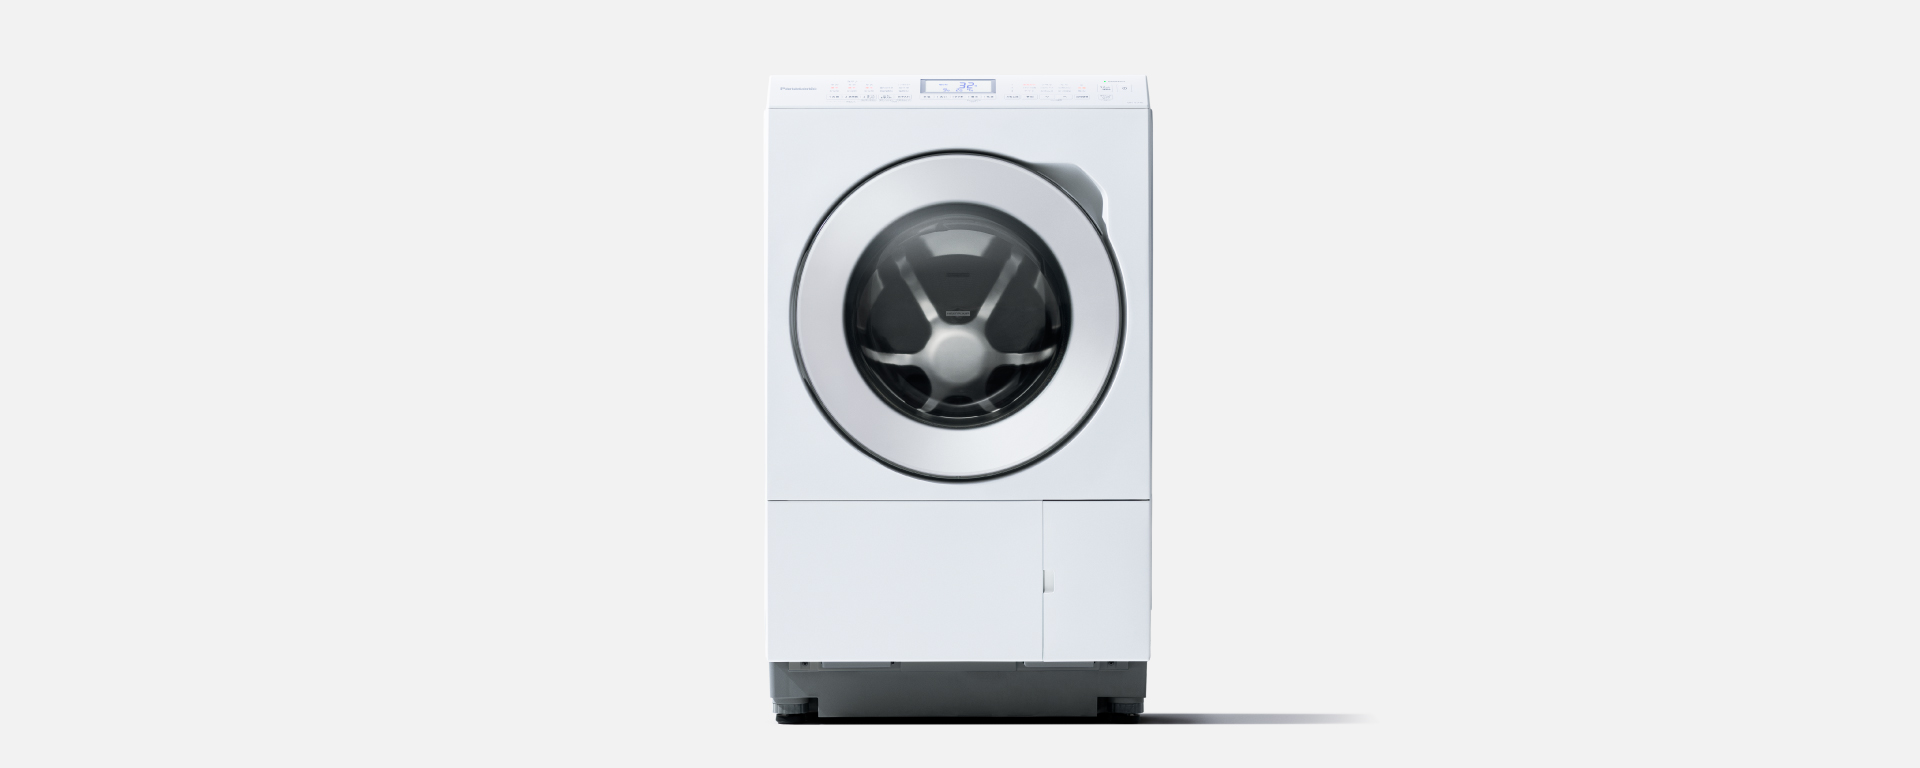 概要 ななめドラム洗濯乾燥機 NA-LX125CL/R | 洗濯機・衣類乾燥機 